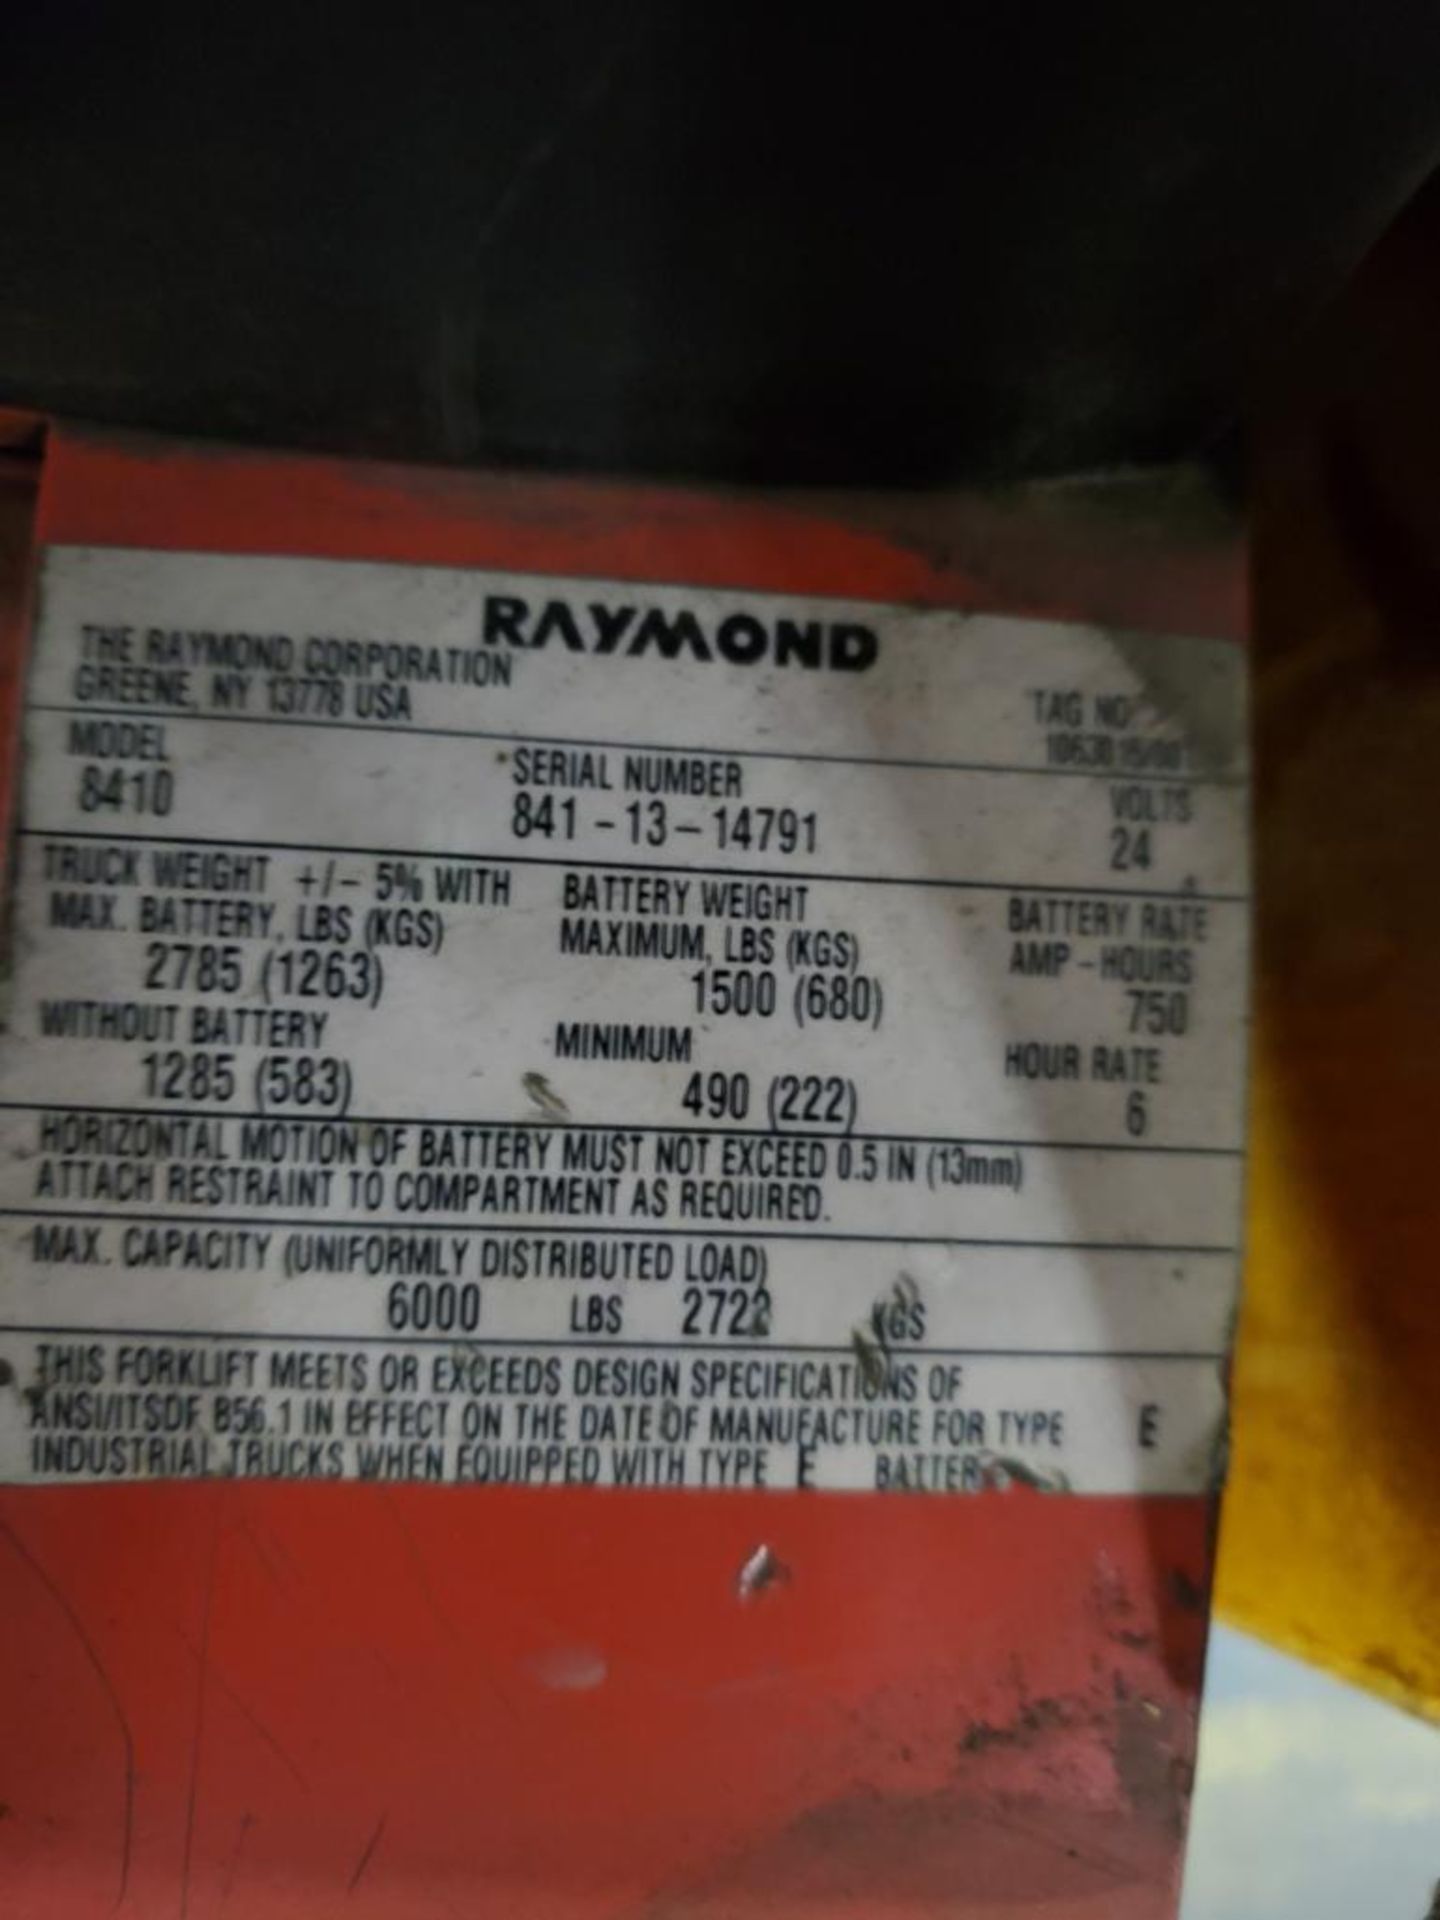 2013 Raymond 6,000 Lb. Electric Pallet Jack, Model 8410, s/n 841-13-14791, 24V, 49" Forks, 8,439 Hou - Image 8 of 8